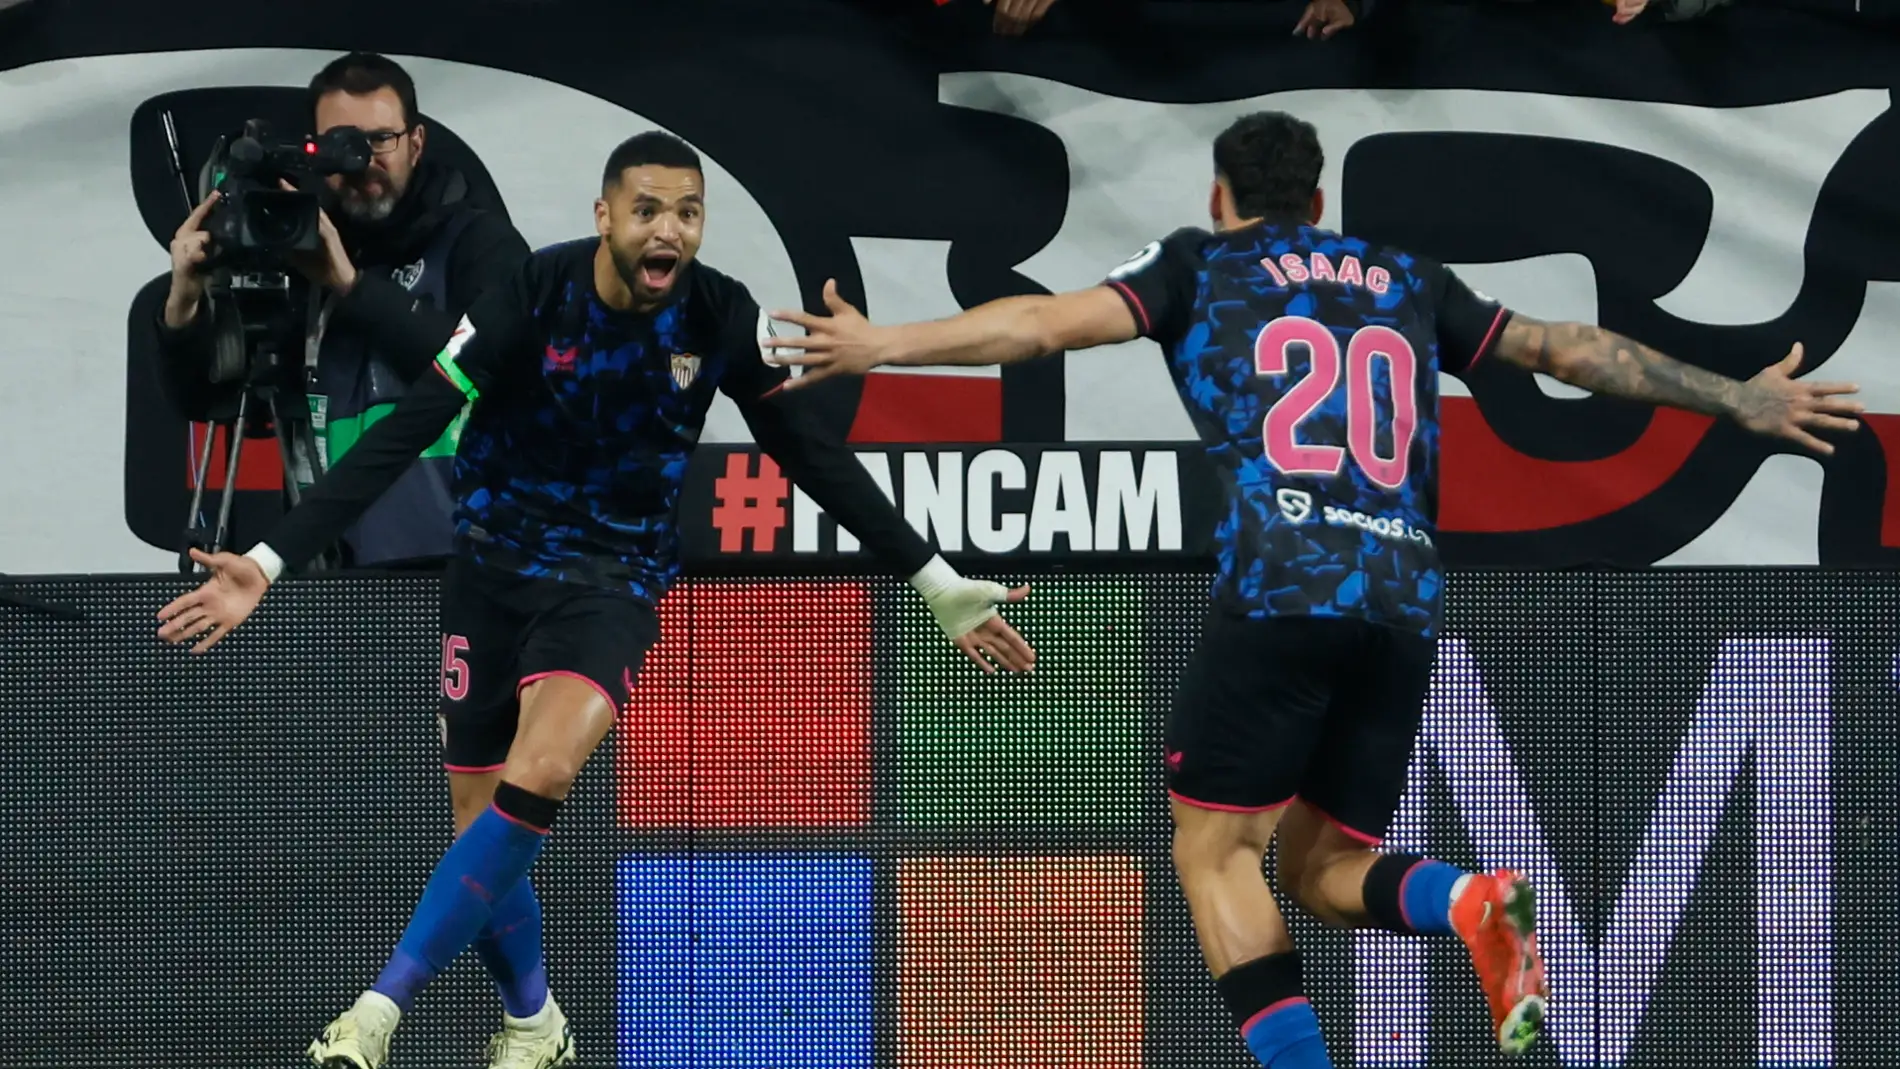 En-Nesyri e Isaac Romero celebran un gol en Vallecas.